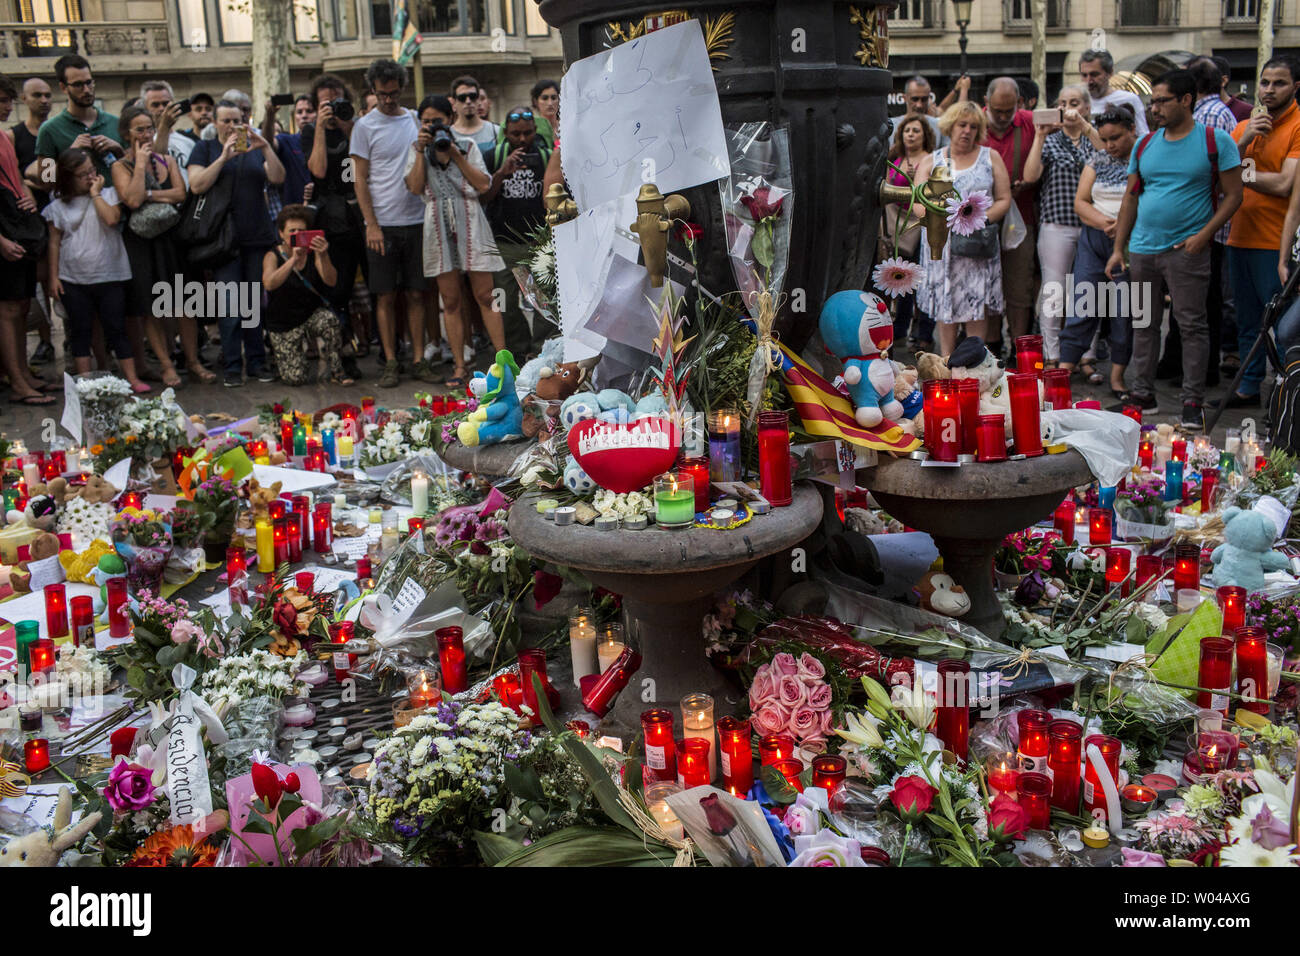 Menschen stehen neben Blumen, Kerzen und andere Gegenstände auf die Font de Canaletes in Barcelona, als Sie erinnert an die Opfer des Barcelona angriff, einen Tag nach dem van in die Menge gepflügt, 14 Personen getötet und über 100 verletzt wurden am 18. August 2017. Die Fahrer haben am 17. August 2017 gepflügt. Foto von Angel Garcia/UPI Stockfoto